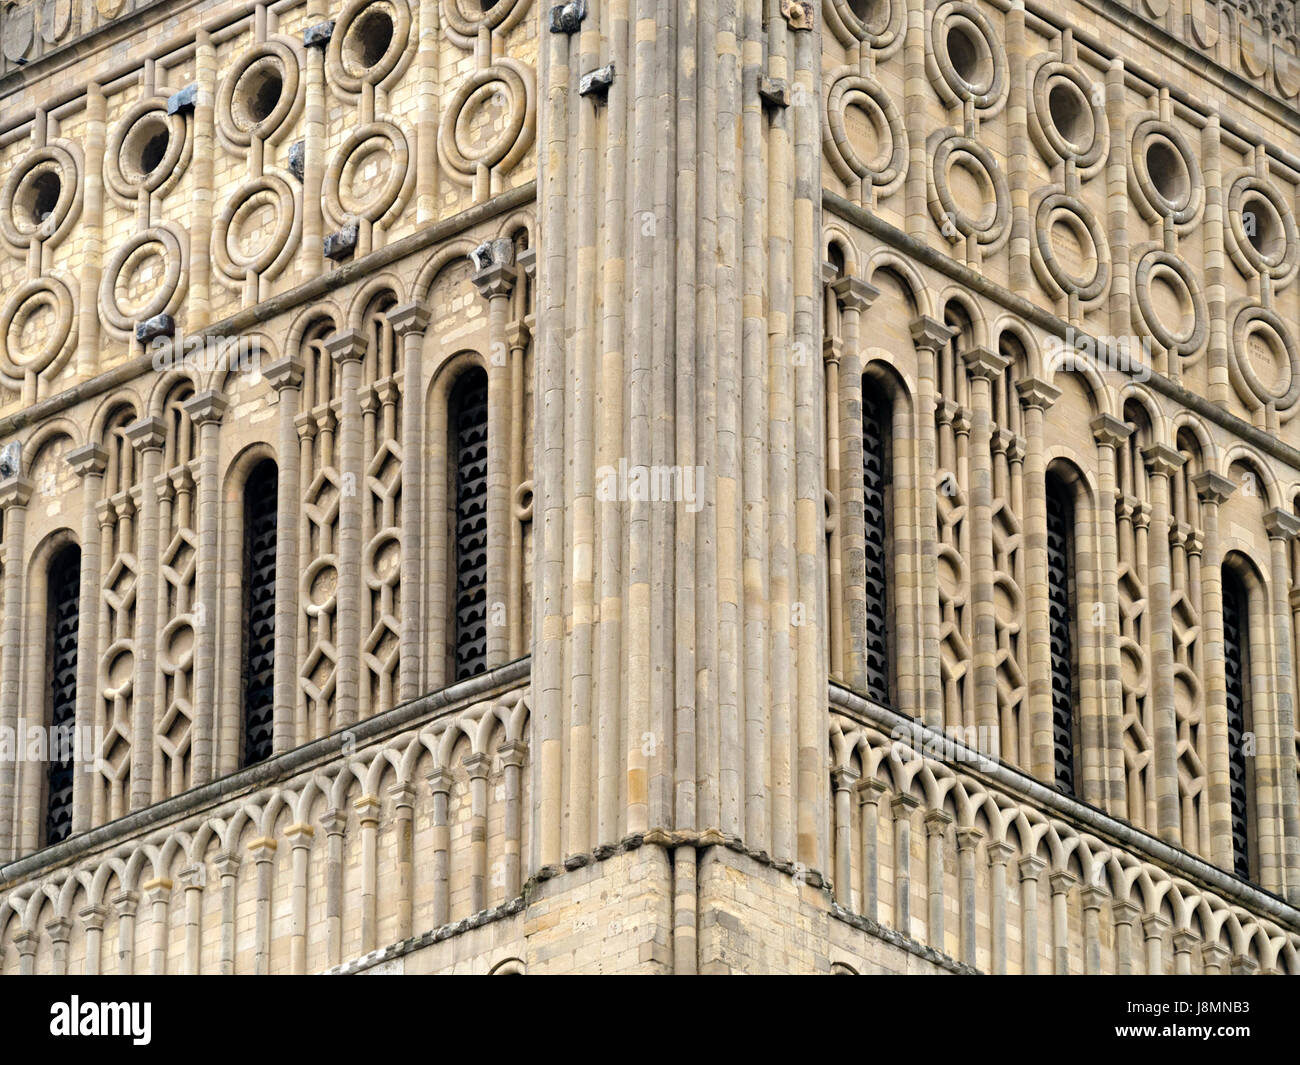 Dettaglio di ornati in pietra scolpita decorazione in muratura sulla Torre Normanna di Norwich Cathedral e Norwich, England, Regno Unito Foto Stock